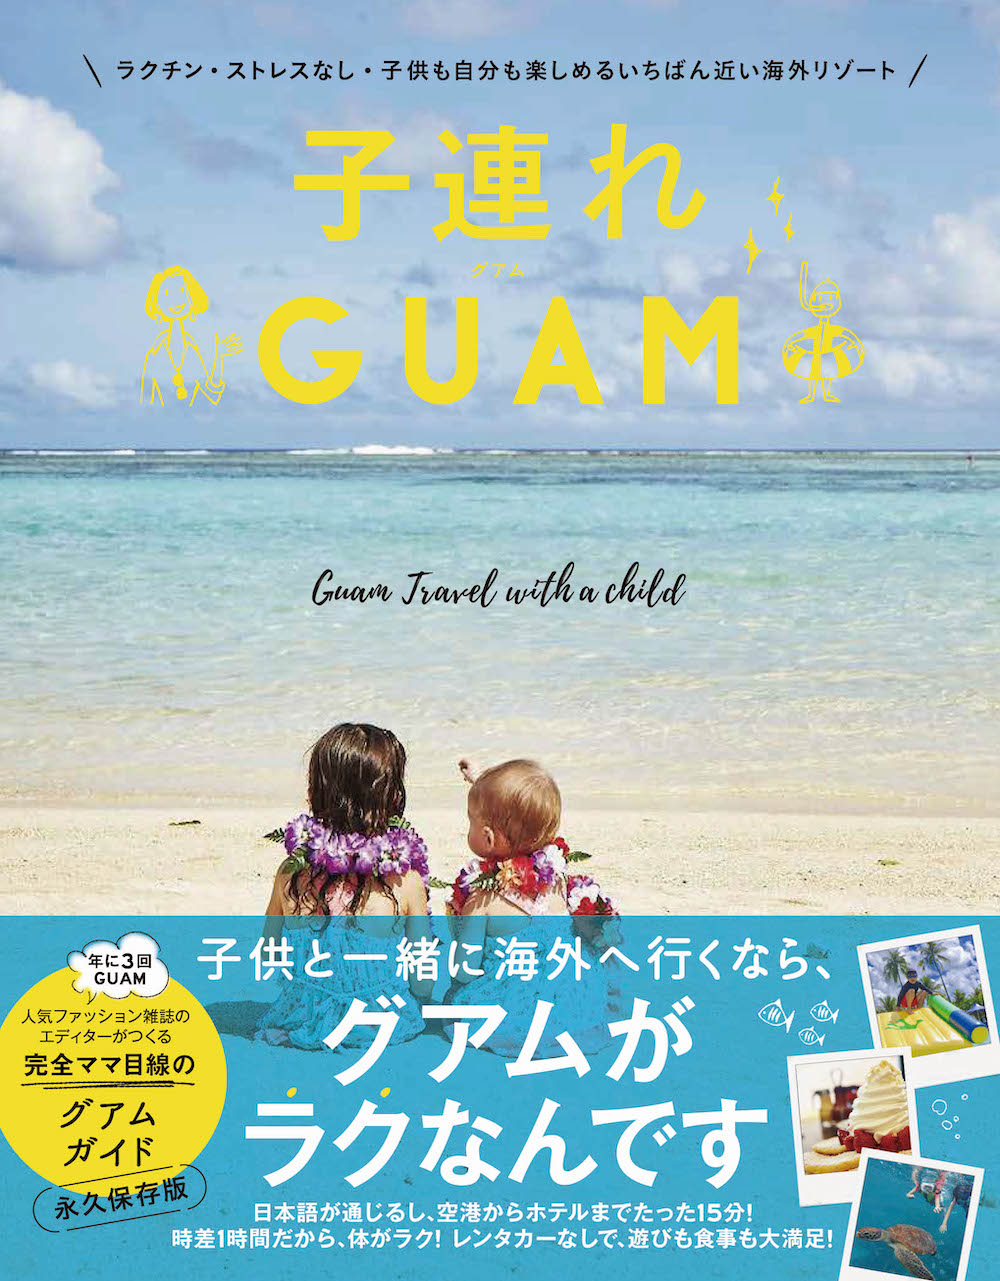 旅行好きなパパママ必見 家族みんなでグアムを満喫できる 子連れguam 著者 高橋香奈子さんが選ぶおすすめツアー特集